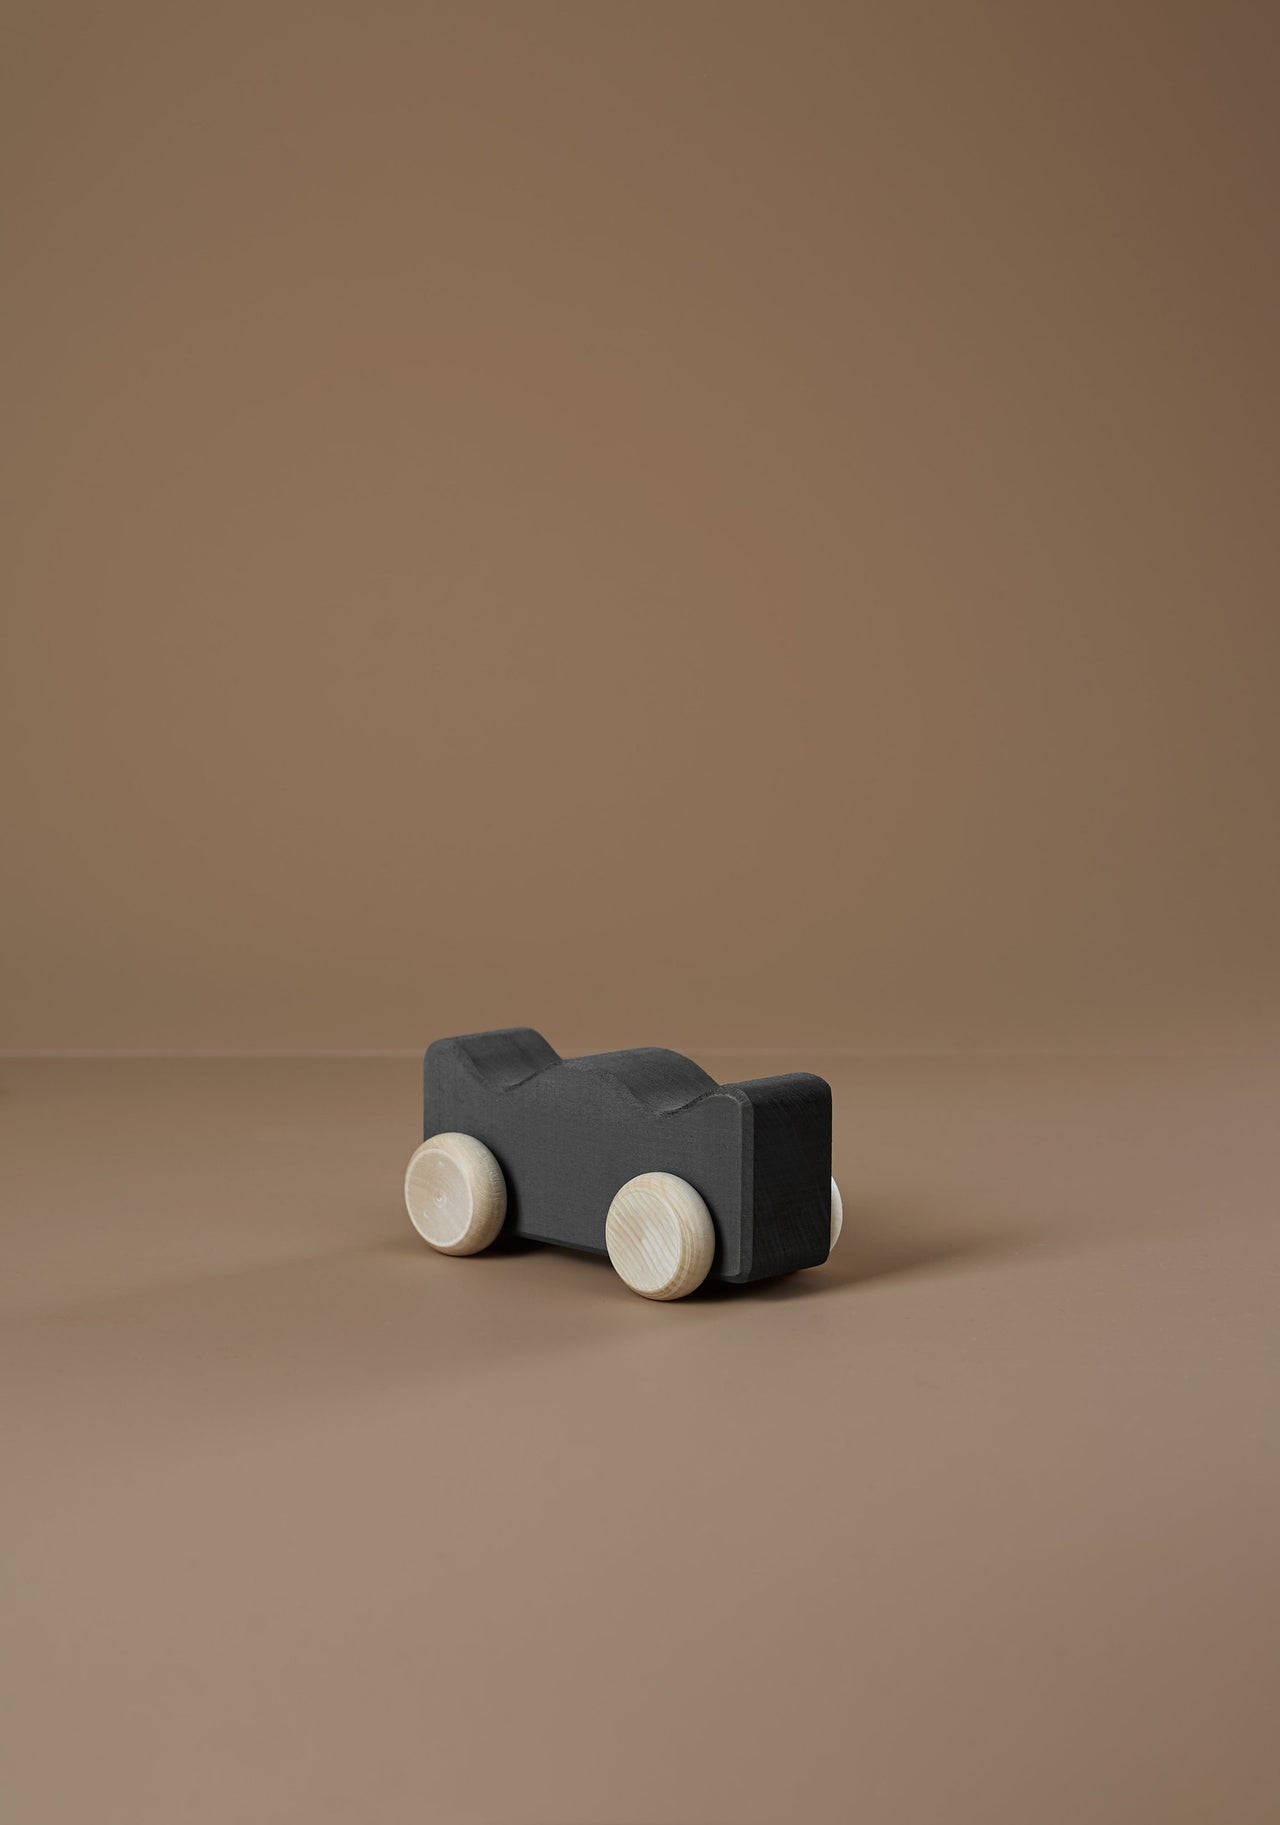 Raduga Grez Wooden Toy Car, Coal